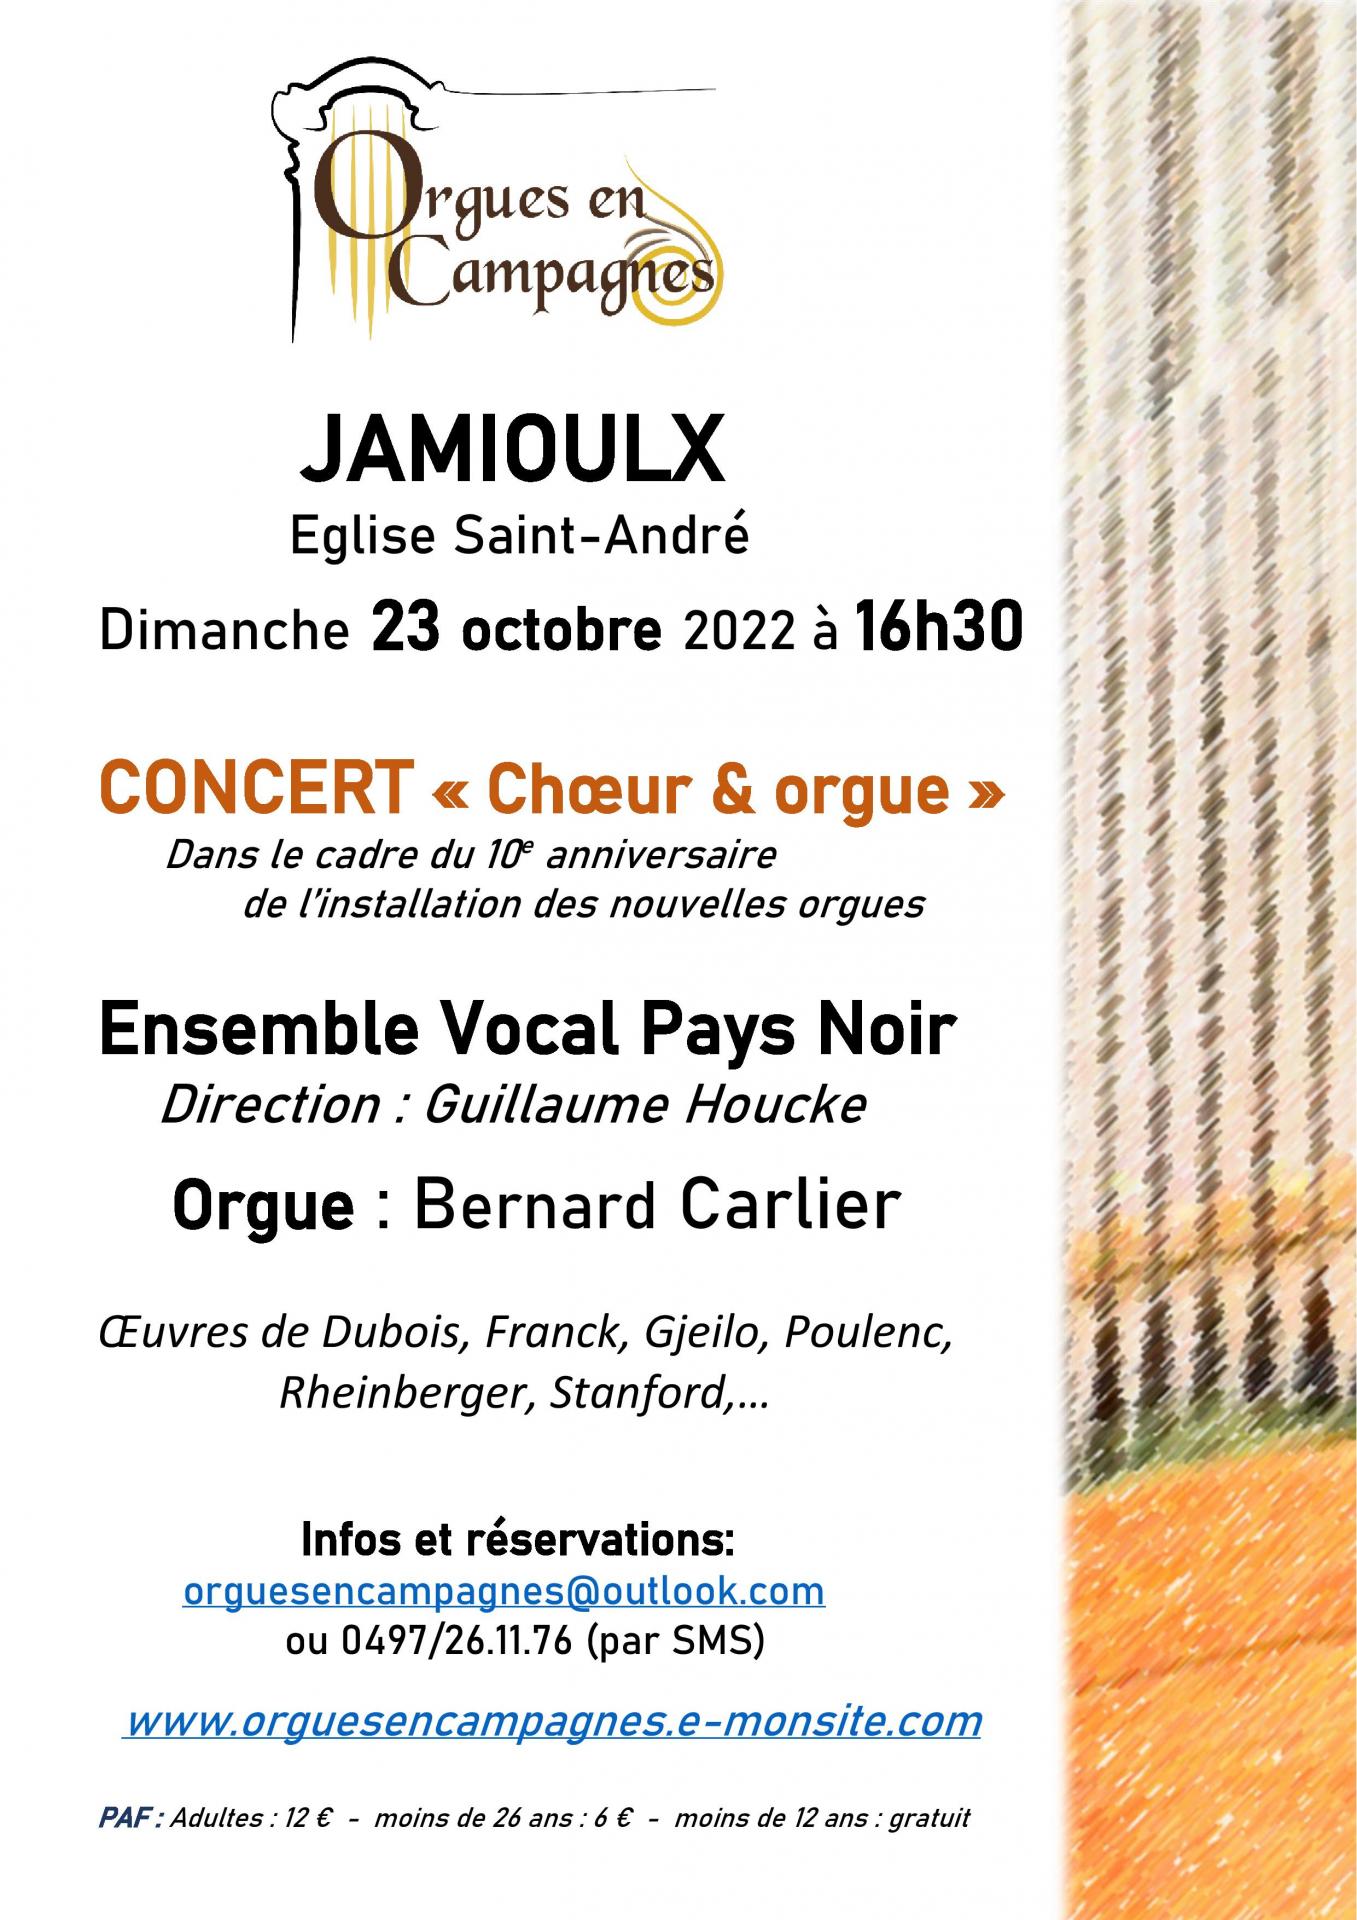 Affiche jamioulx choeur et orgue 2022 10 23 page 001